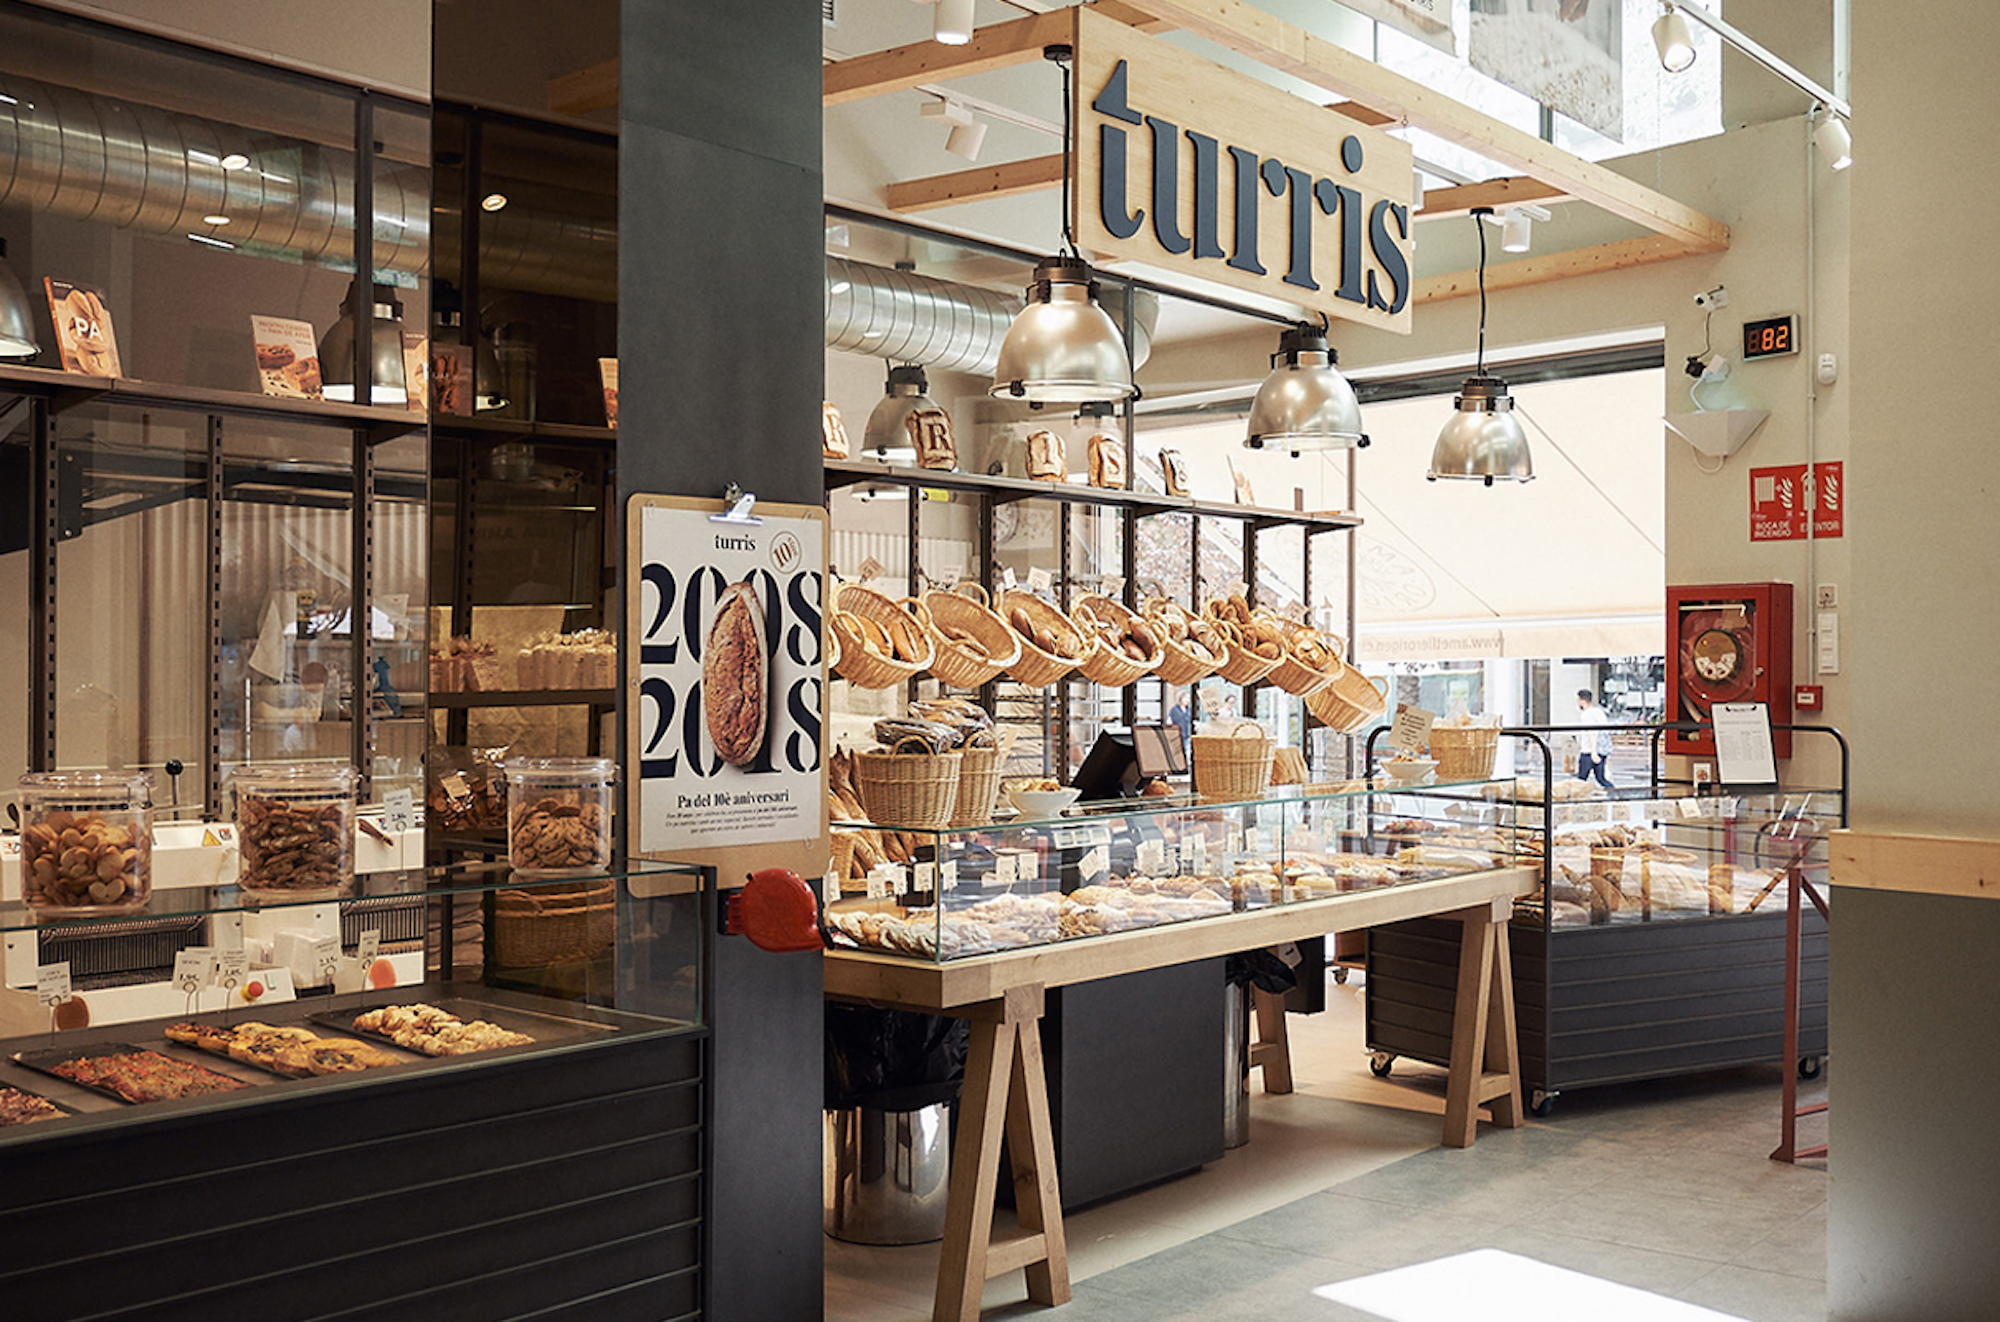 Turris, la panadería de referencia en Barcelona